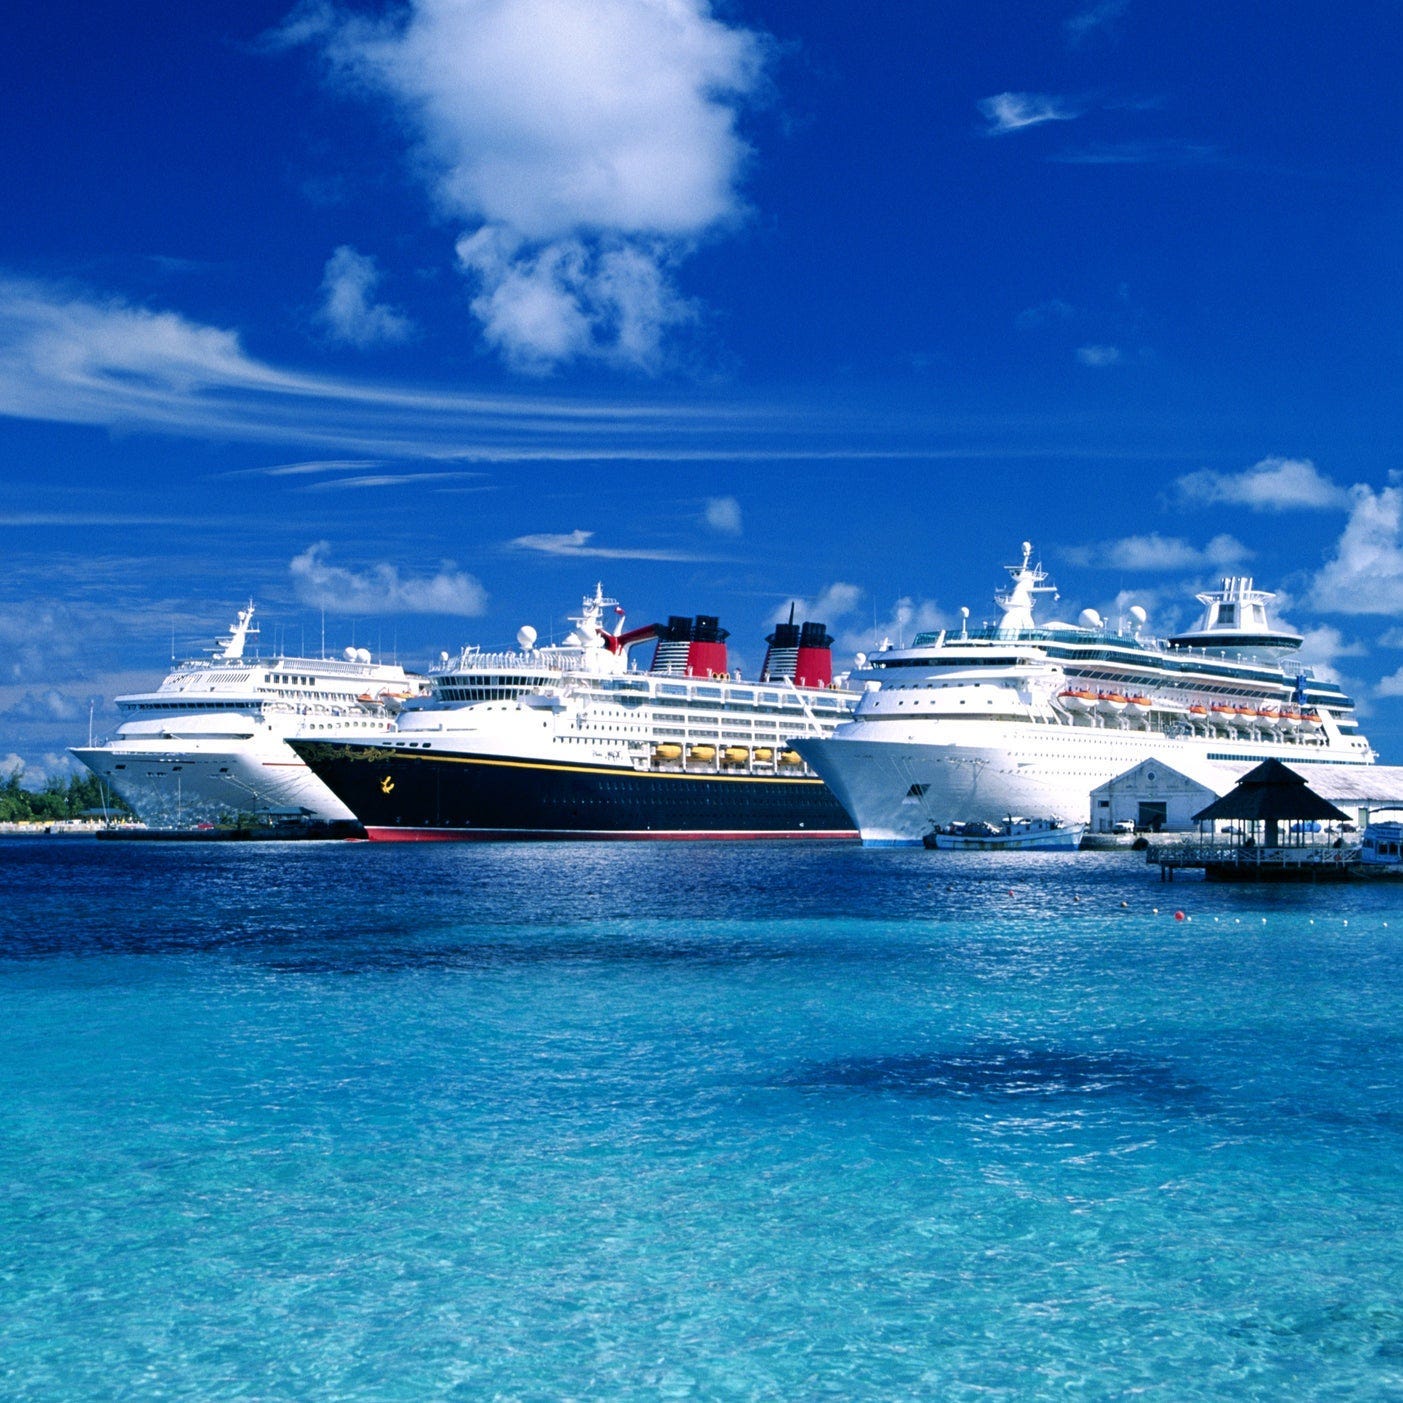 Fact check: Cruise ship companies didn't seek a US COVID-19 bailout